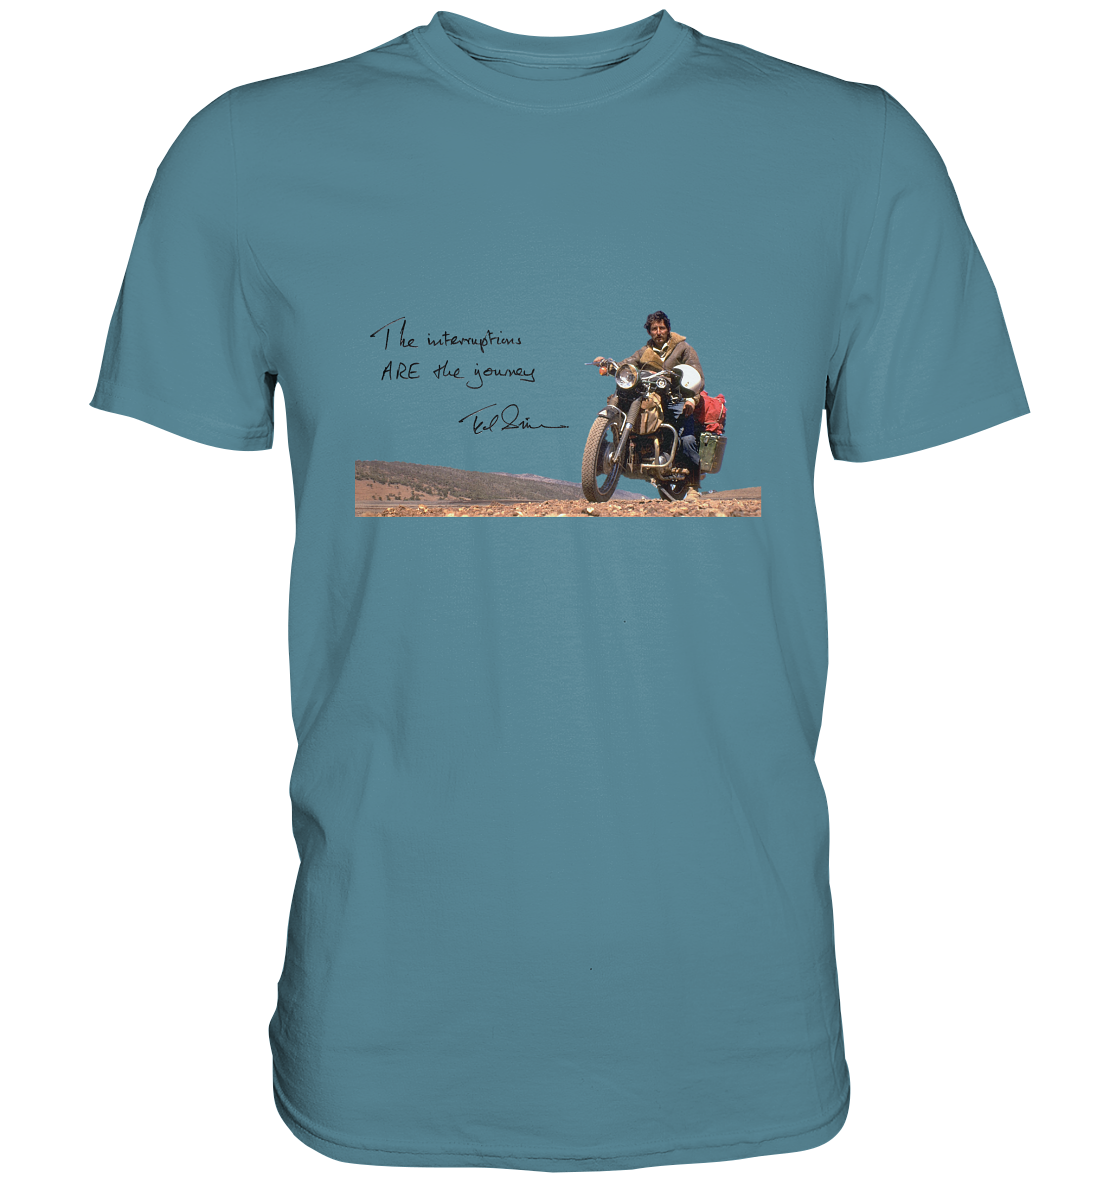 T-Shirt, Herren, men, Ted Simon auf seinem Motorrad, on his motorbike, Jupitalia mit handschriftlichem Zitat, with handwritten quote "The Interruptions are the journey." blau, blue